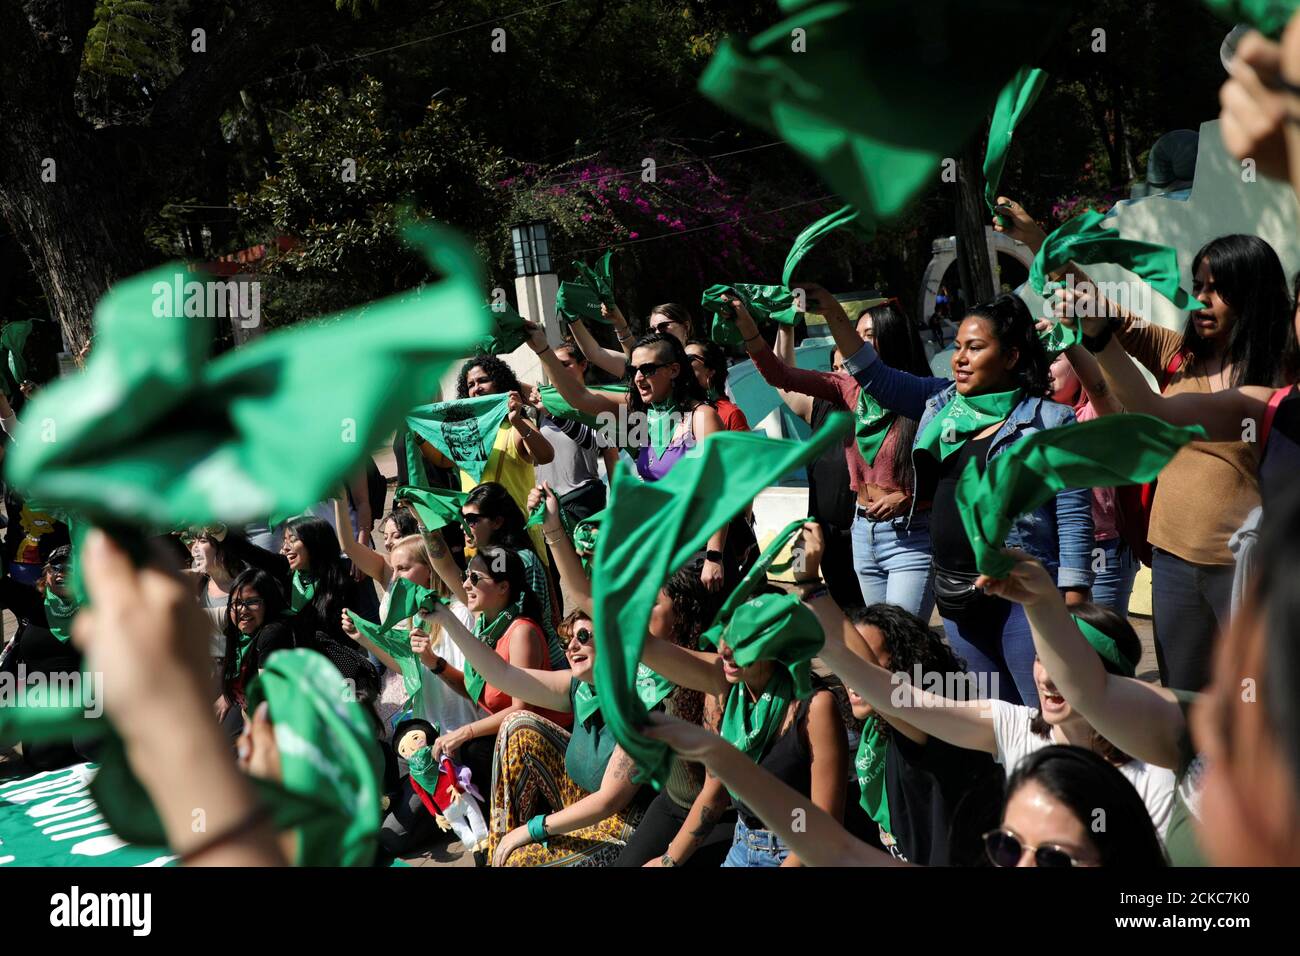 Las mujeres tienen pañuelos verdes durante una protesta en apoyo del aborto legal y seguro en la Ciudad de México, México, 19 de febrero de 2020. REUTERS/Edgard Garrido Foto de stock